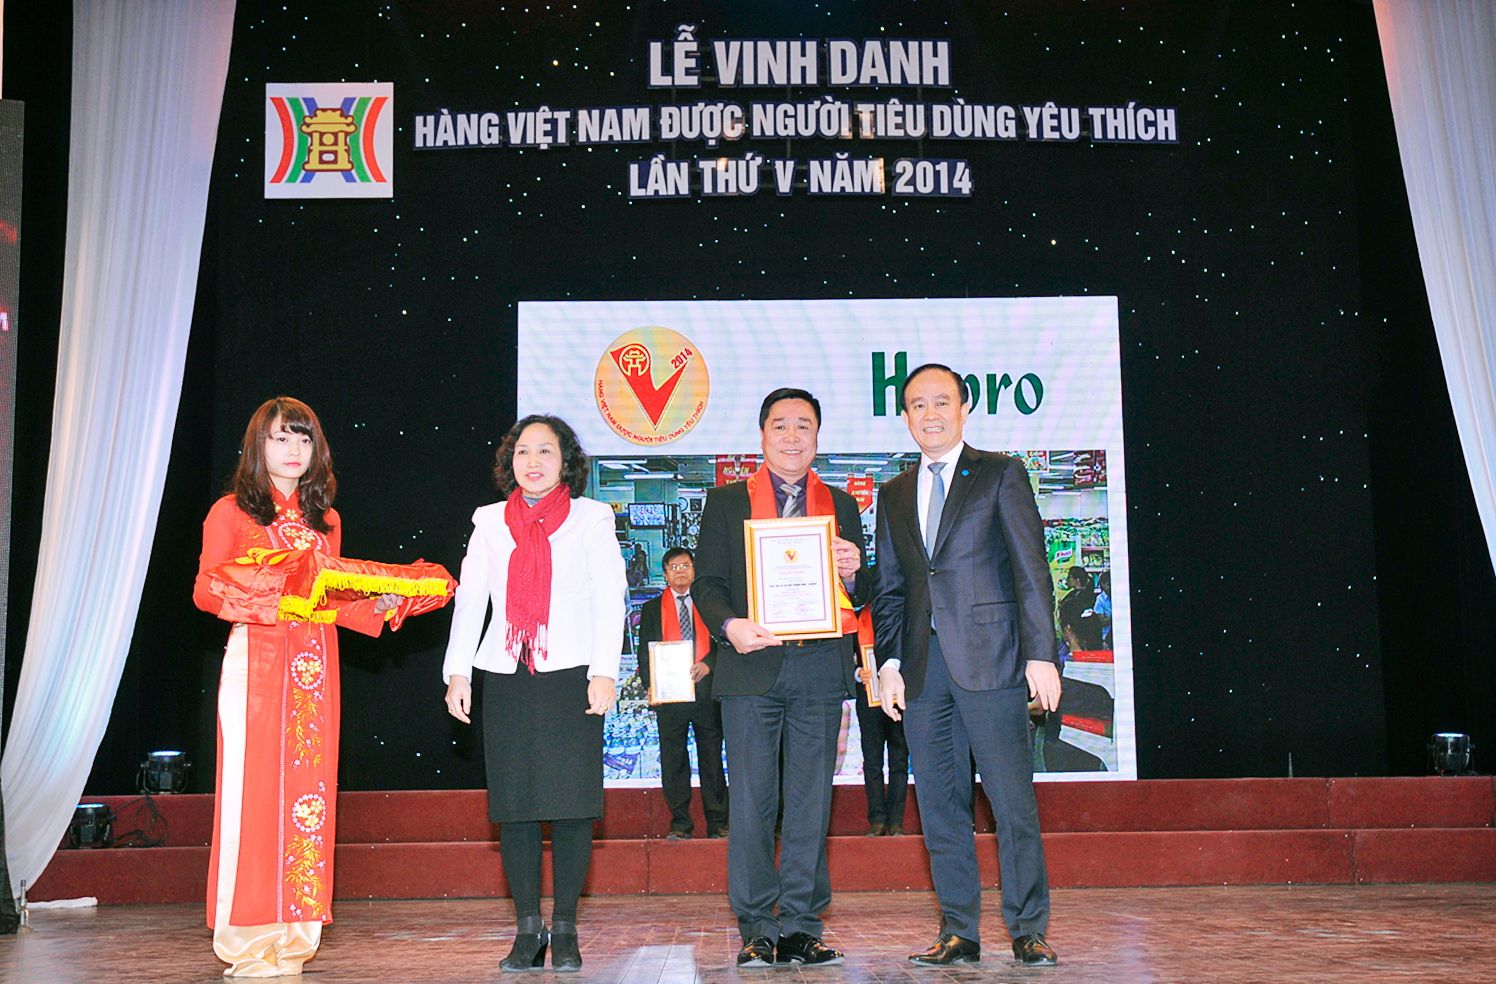 CADI-SUN – Top 10 thương hiệu “Hàng Việt Nam được người tiêu dùng yêu thích” năm 2014